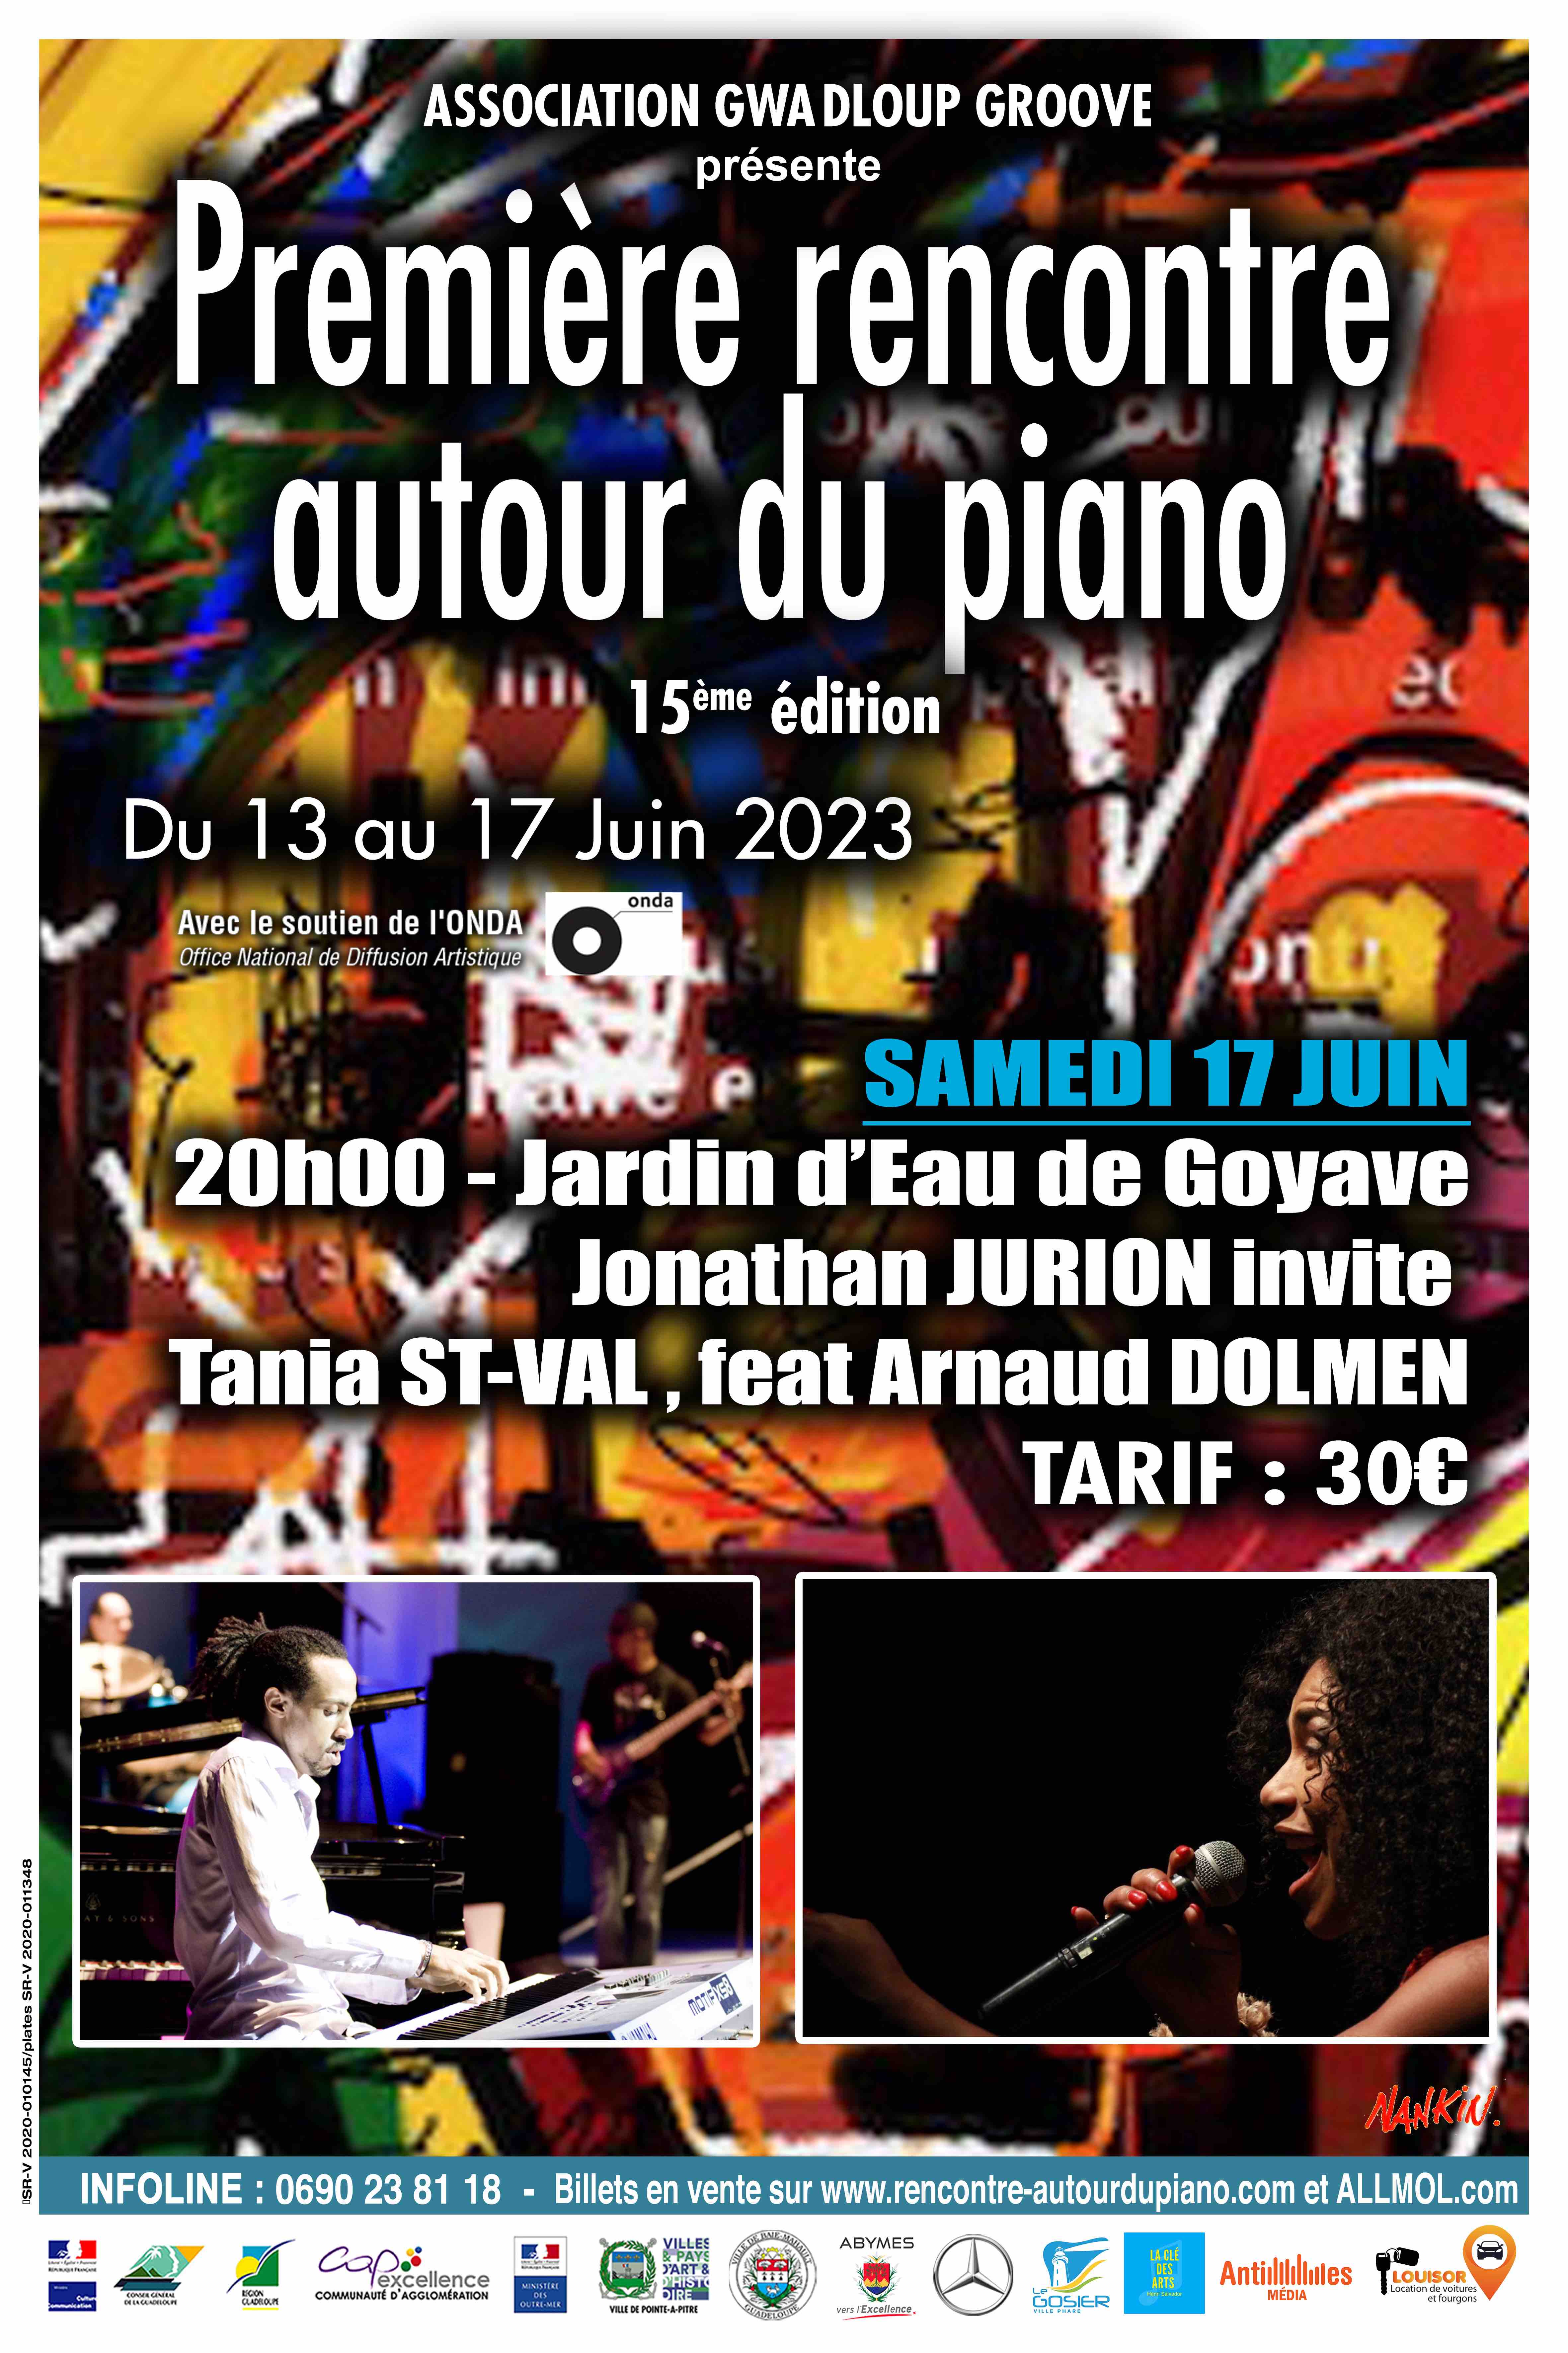 Première rencontre autour du piano/concert jonathan jurion invite Tania St val beat Arnaud dolmen.